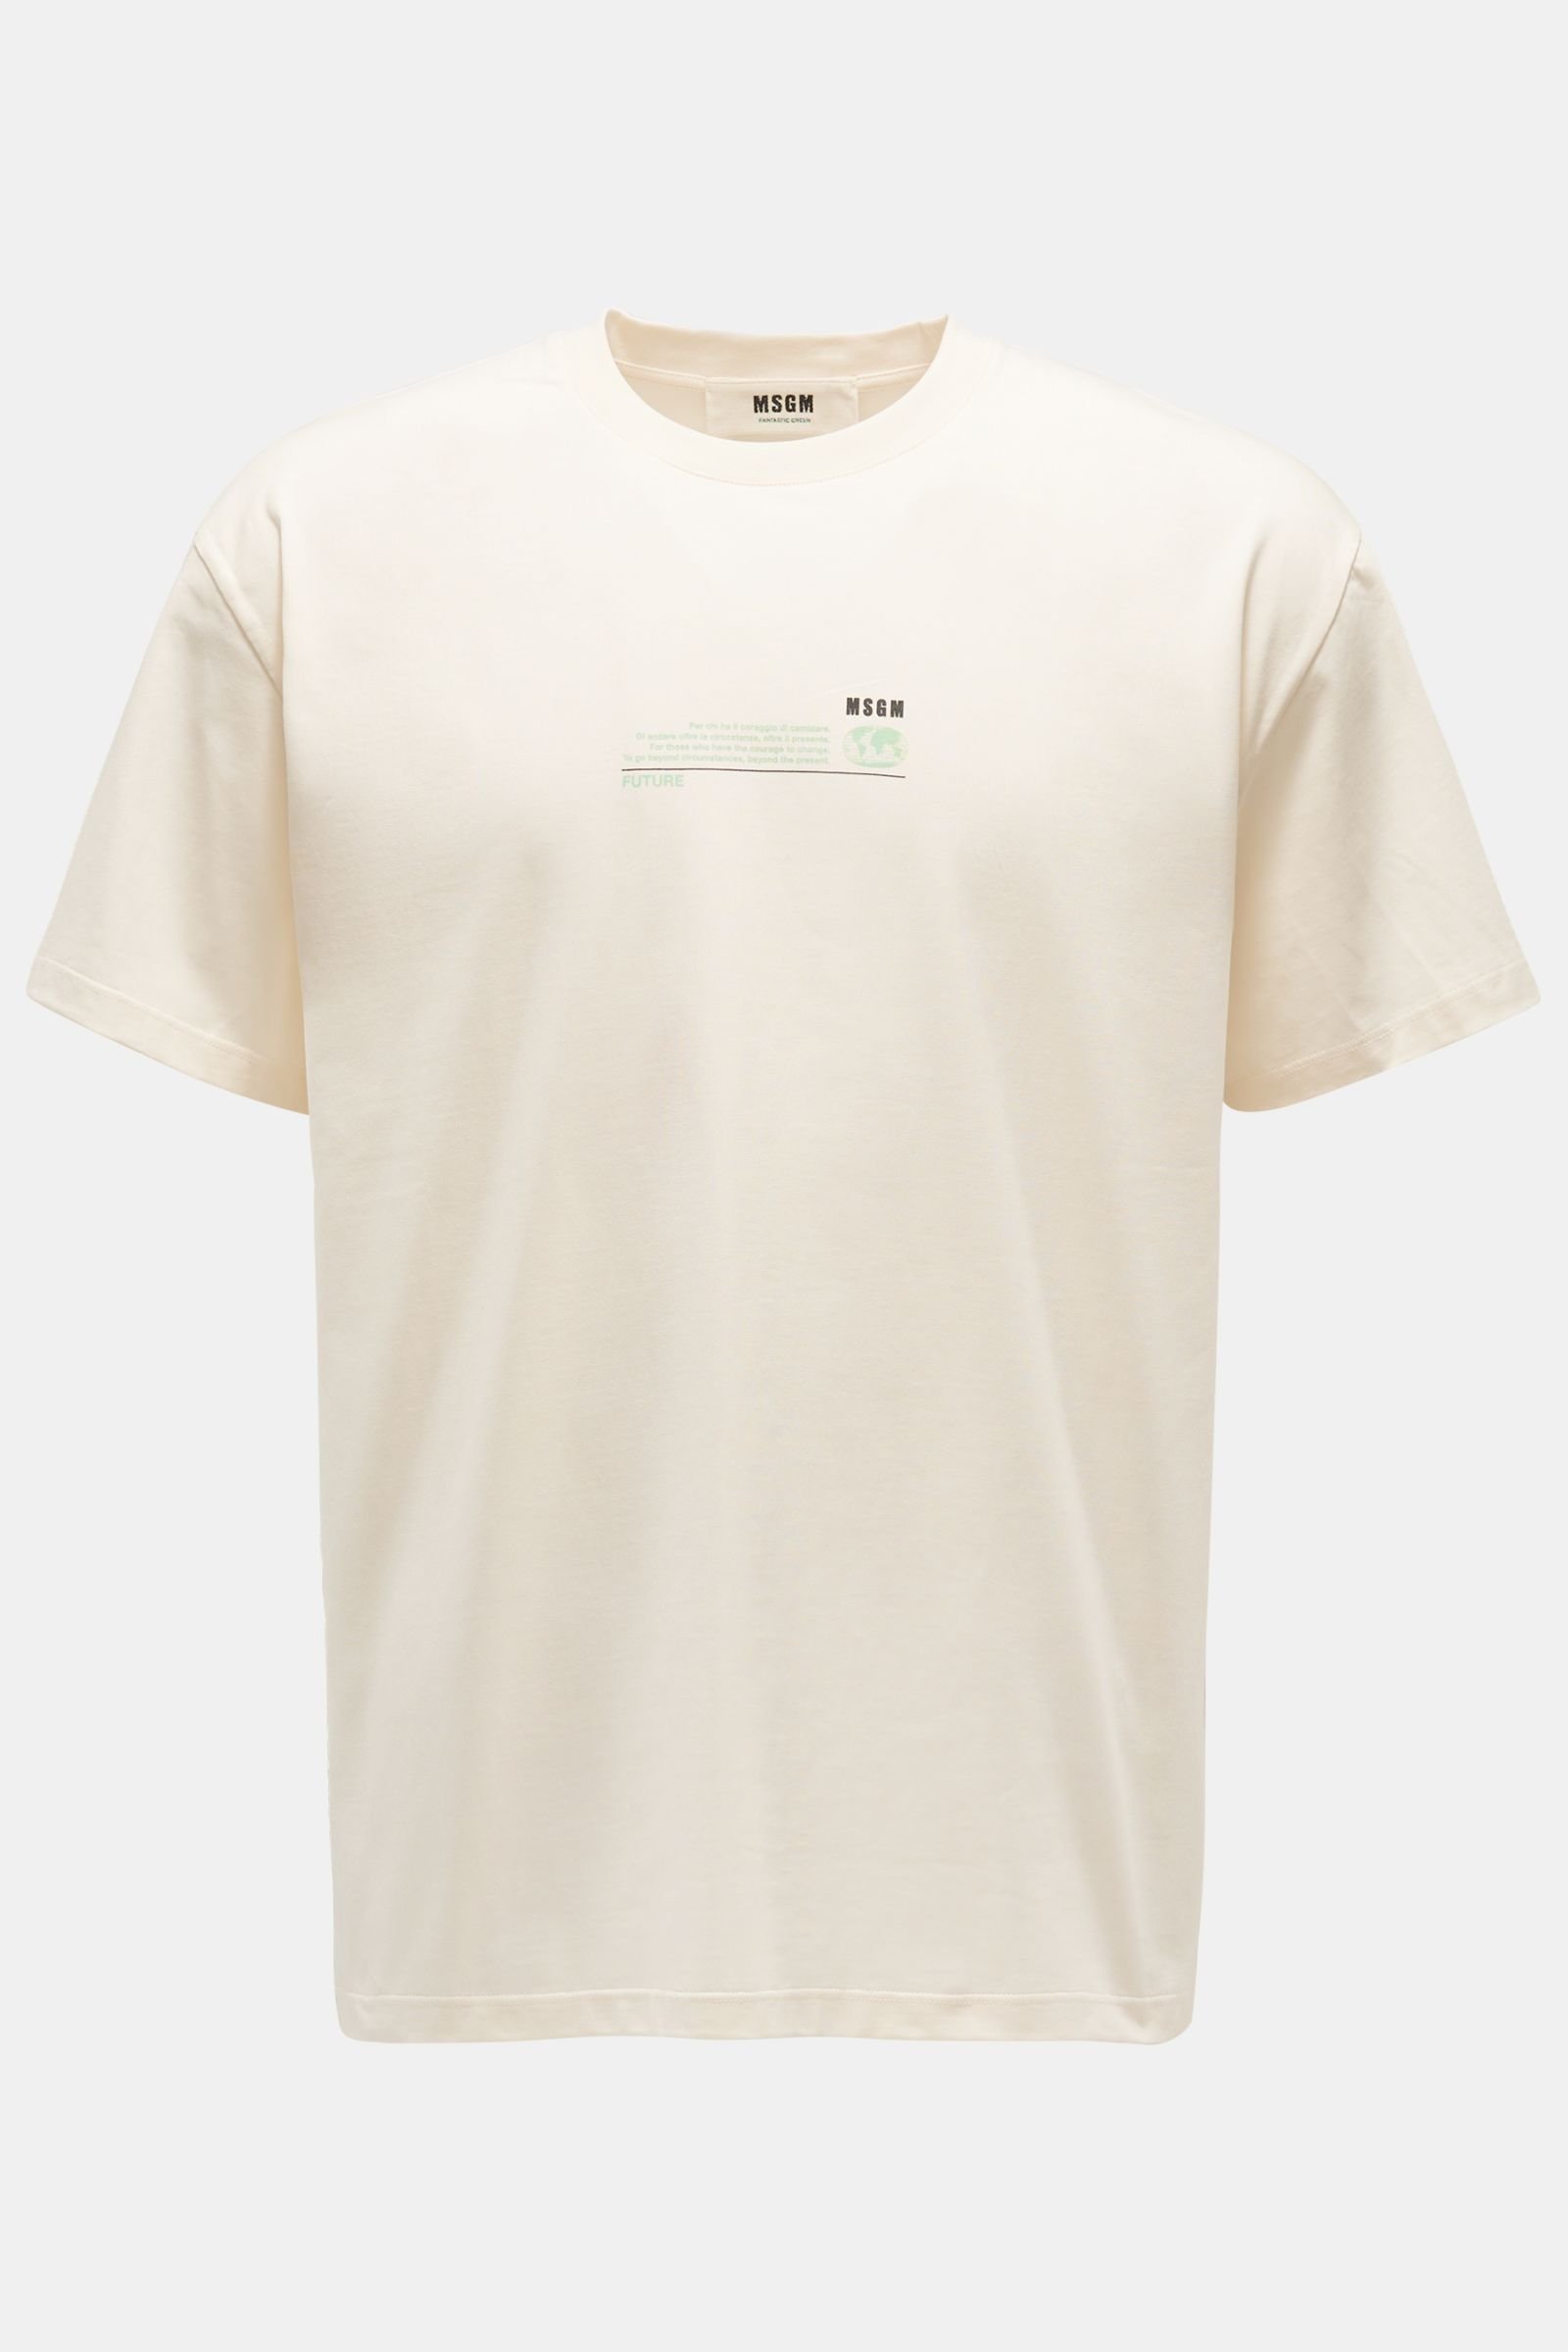 Rundhals-T-Shirt offwhite